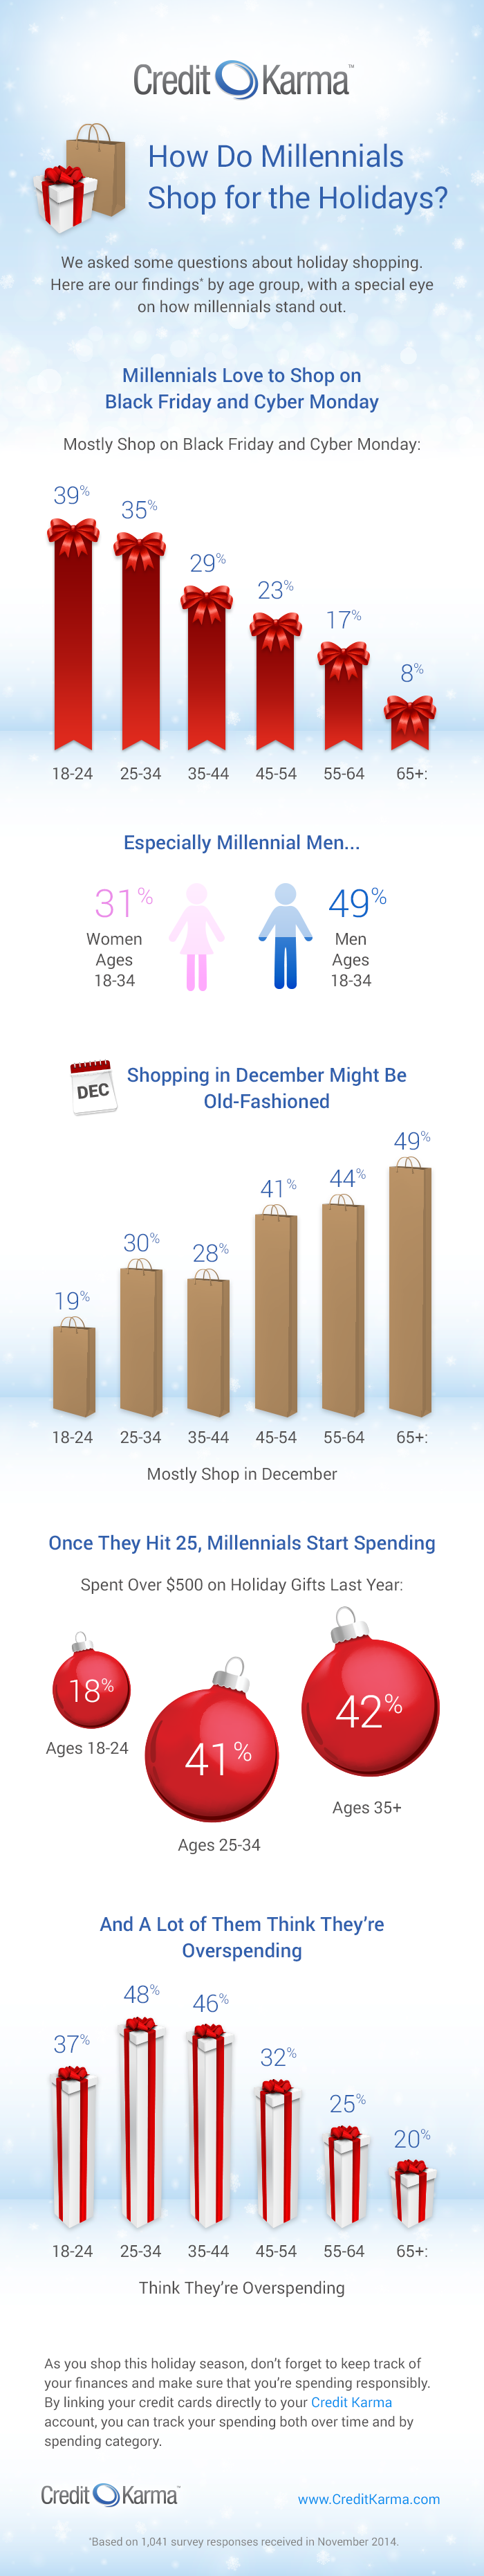 infographic_HolidayShopping